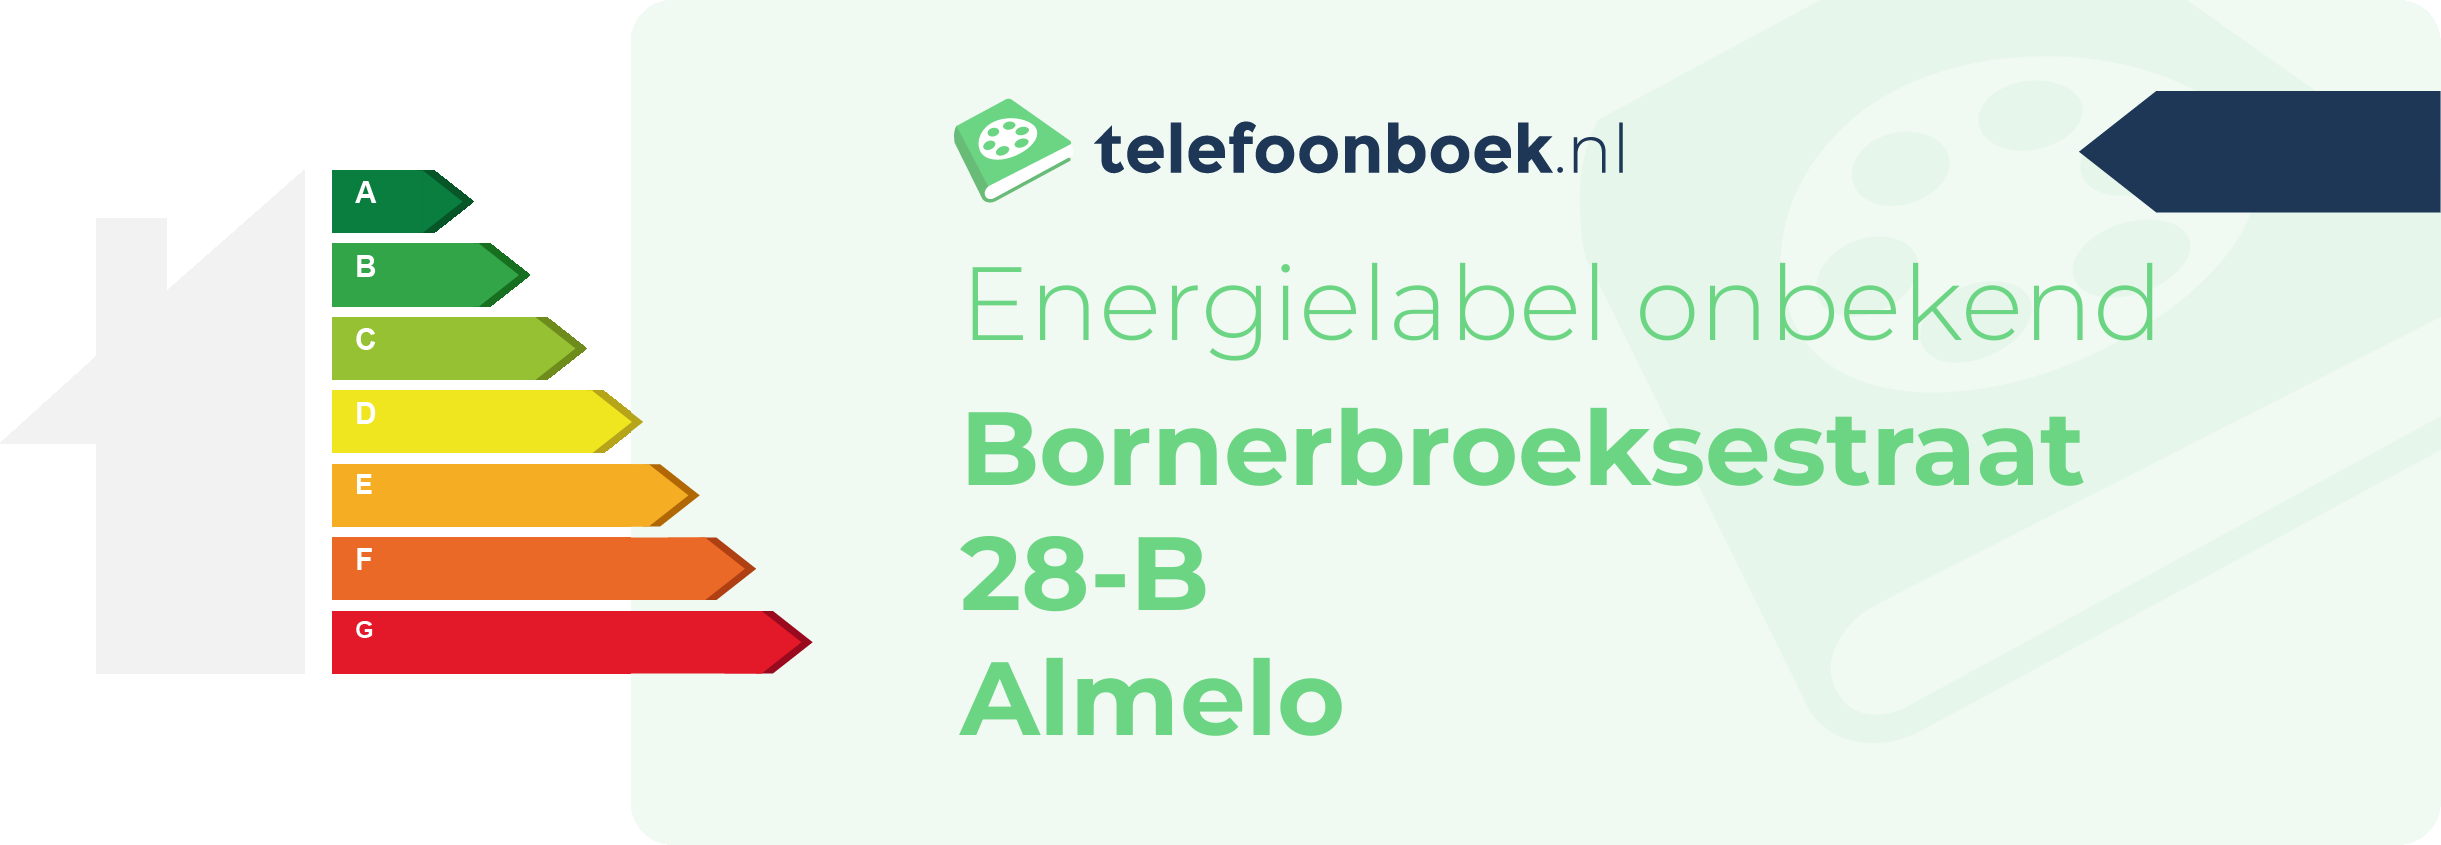 Energielabel Bornerbroeksestraat 28-B Almelo